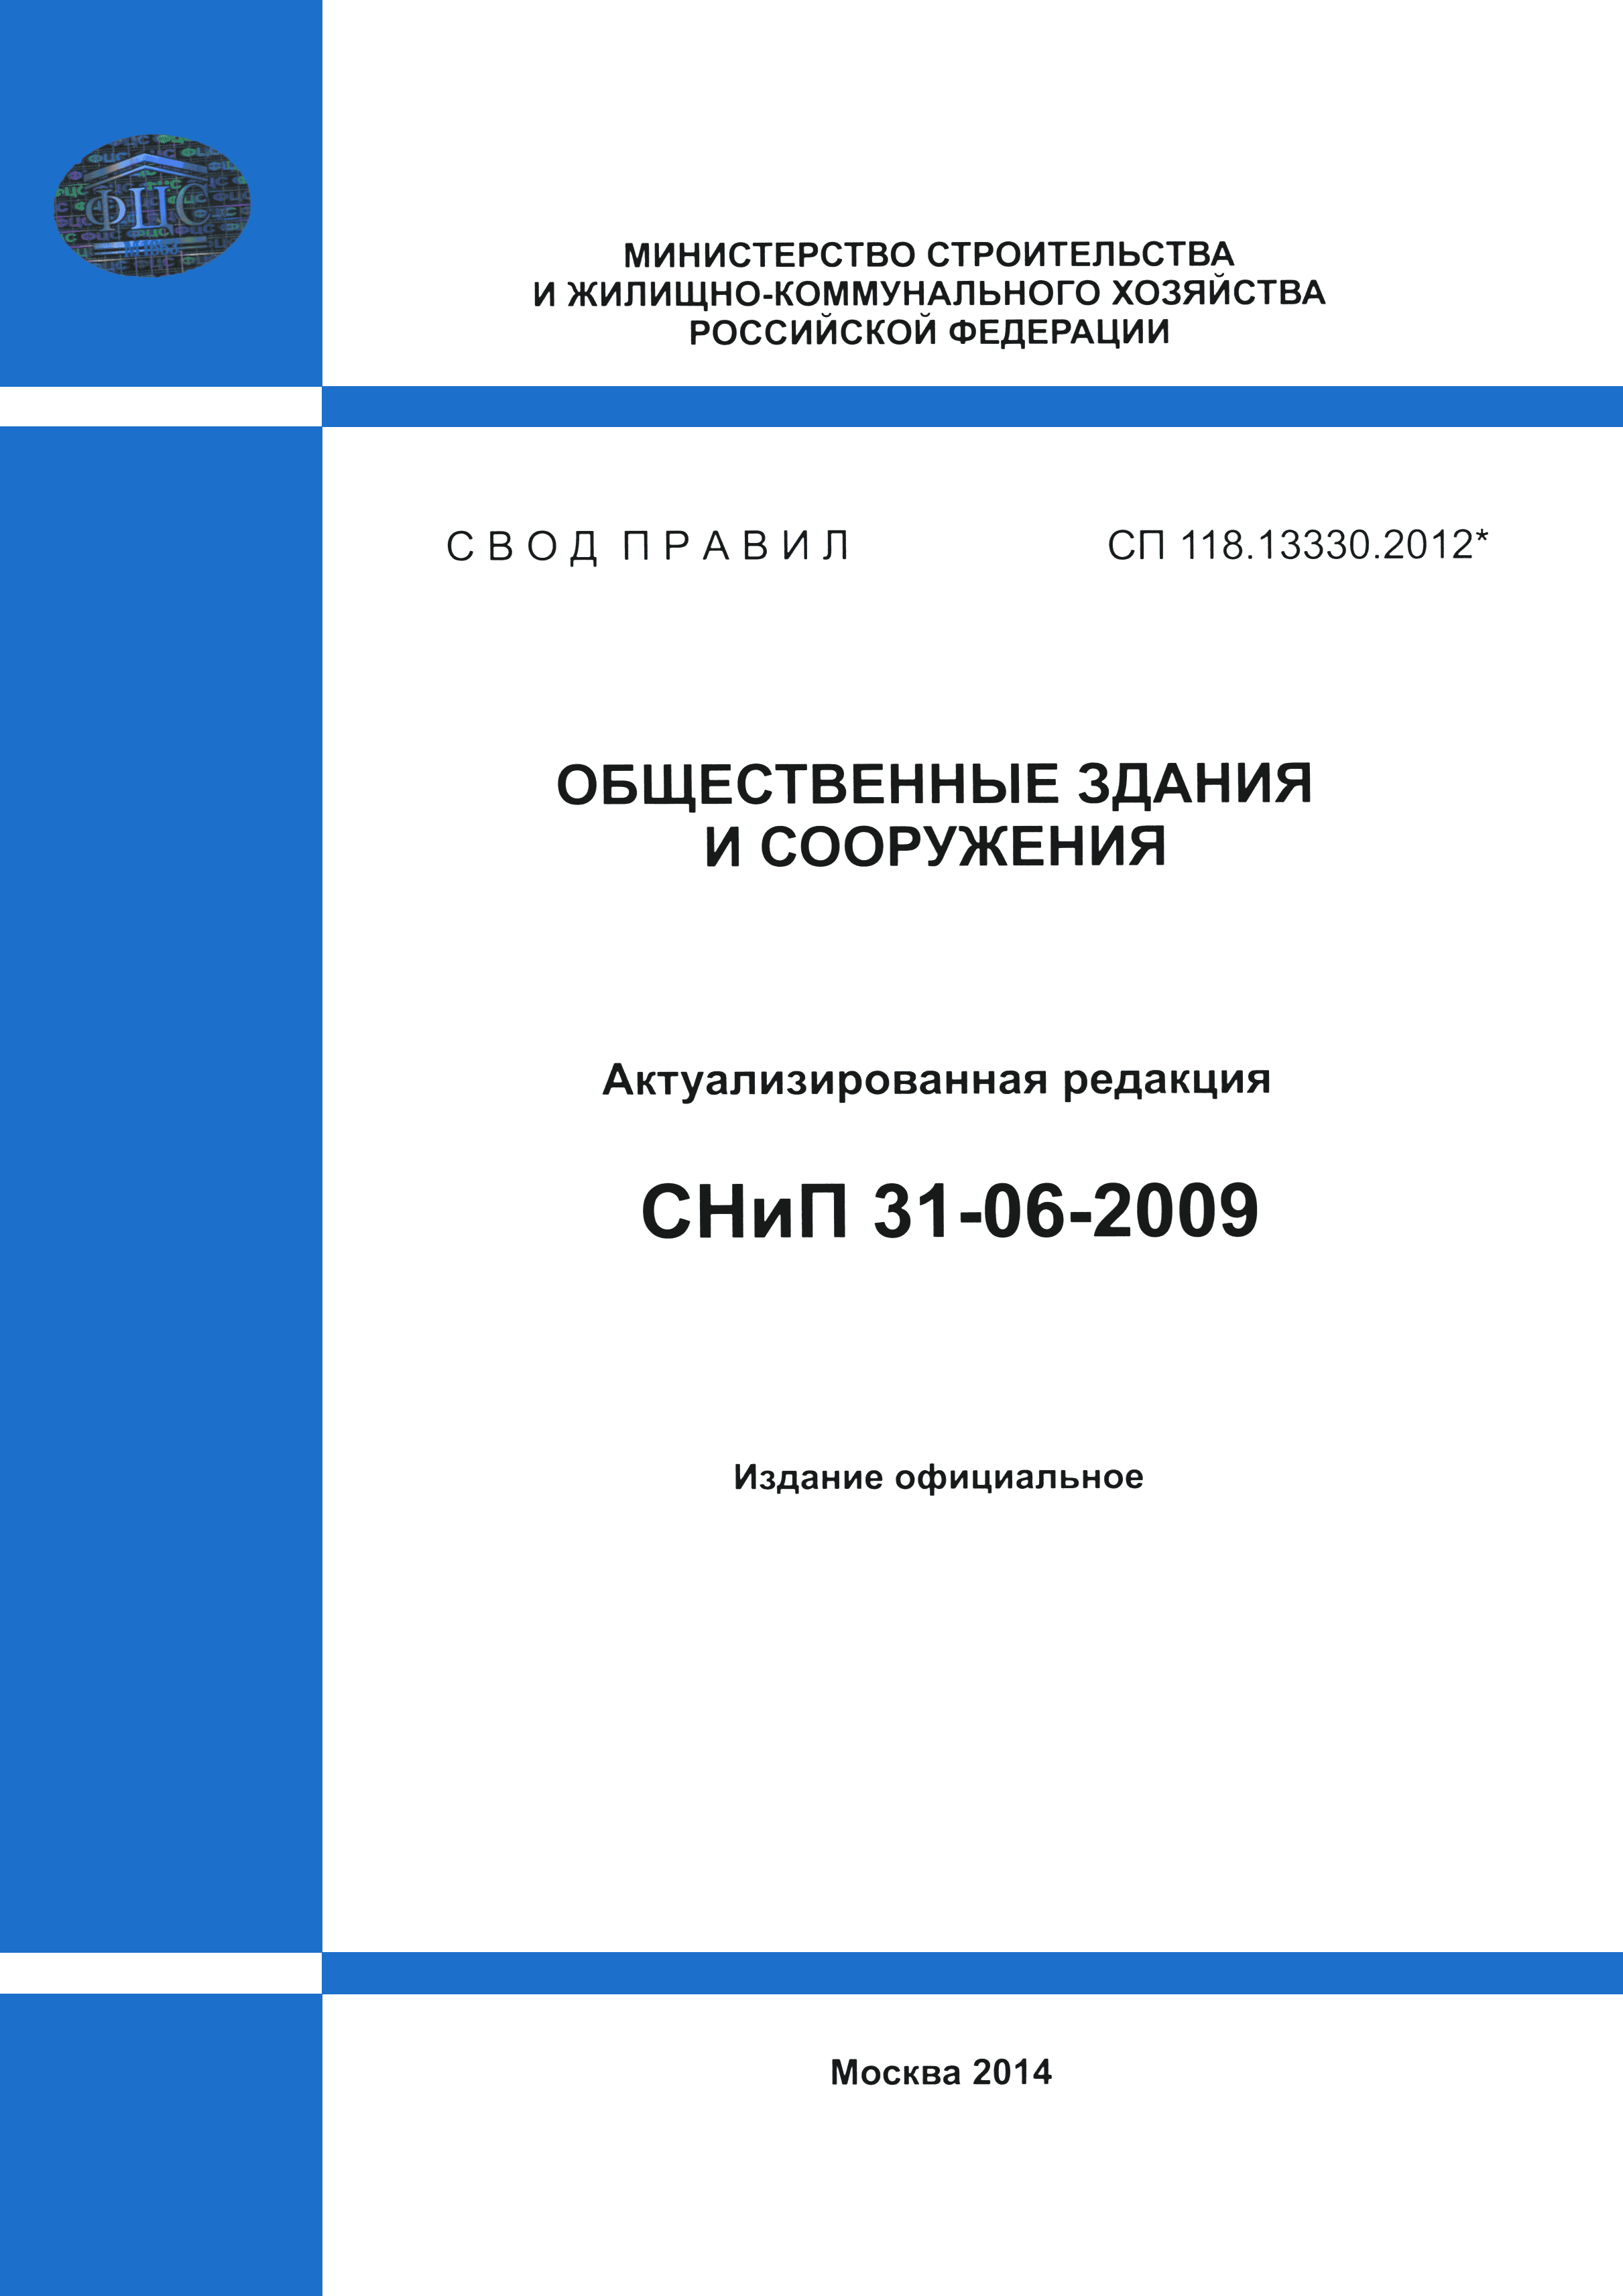 СП 118.13330.2012*